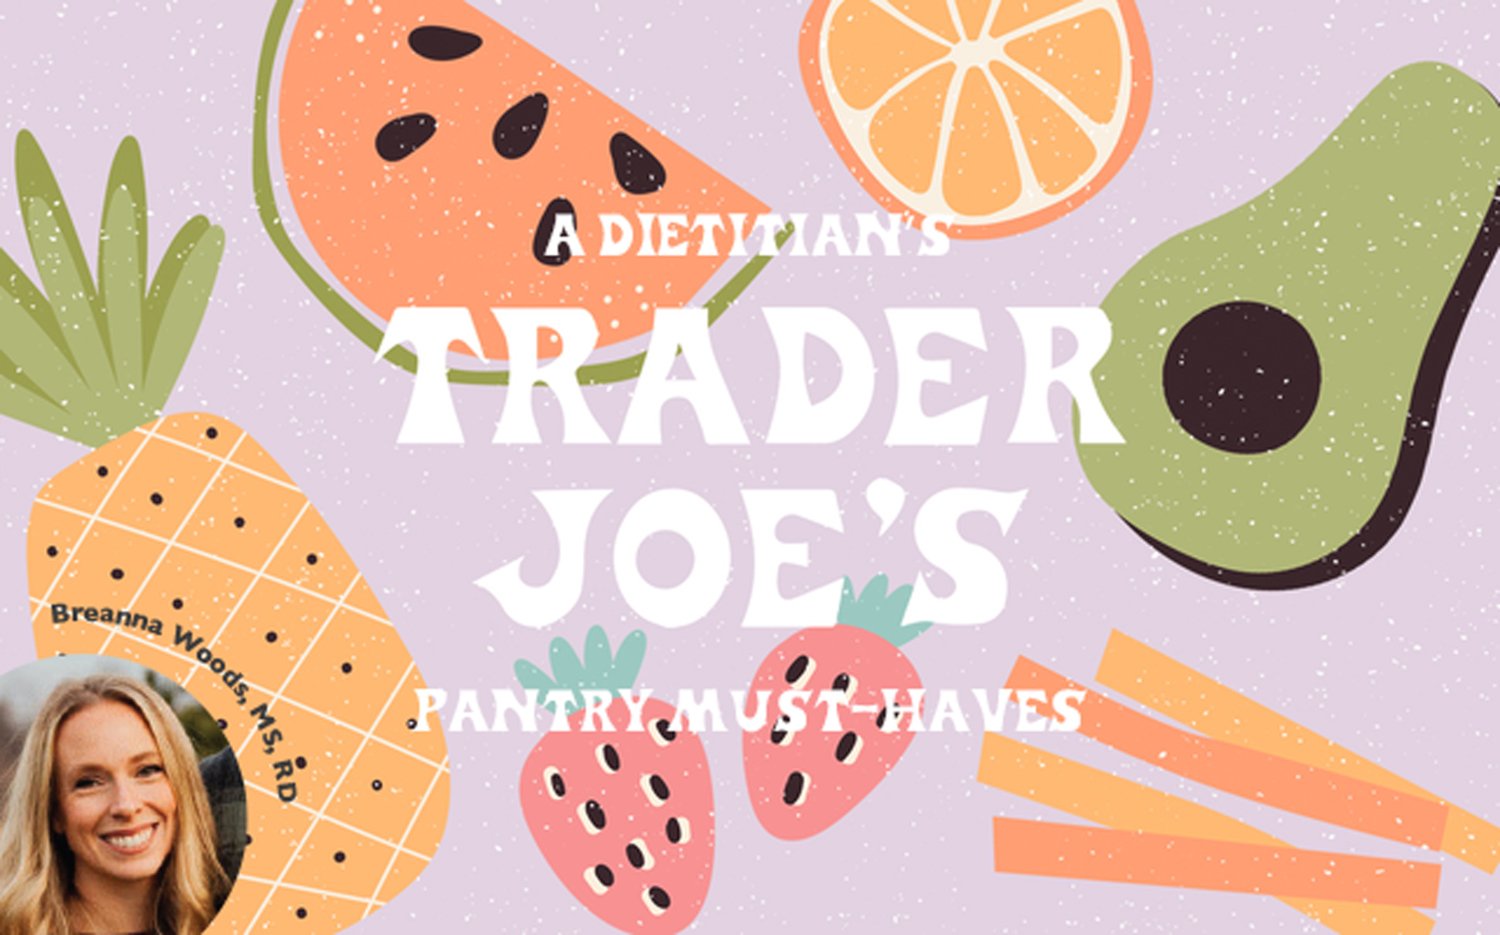 Trader Joe's Best Budget Buys - Trader Joe's $2 Or Less Items